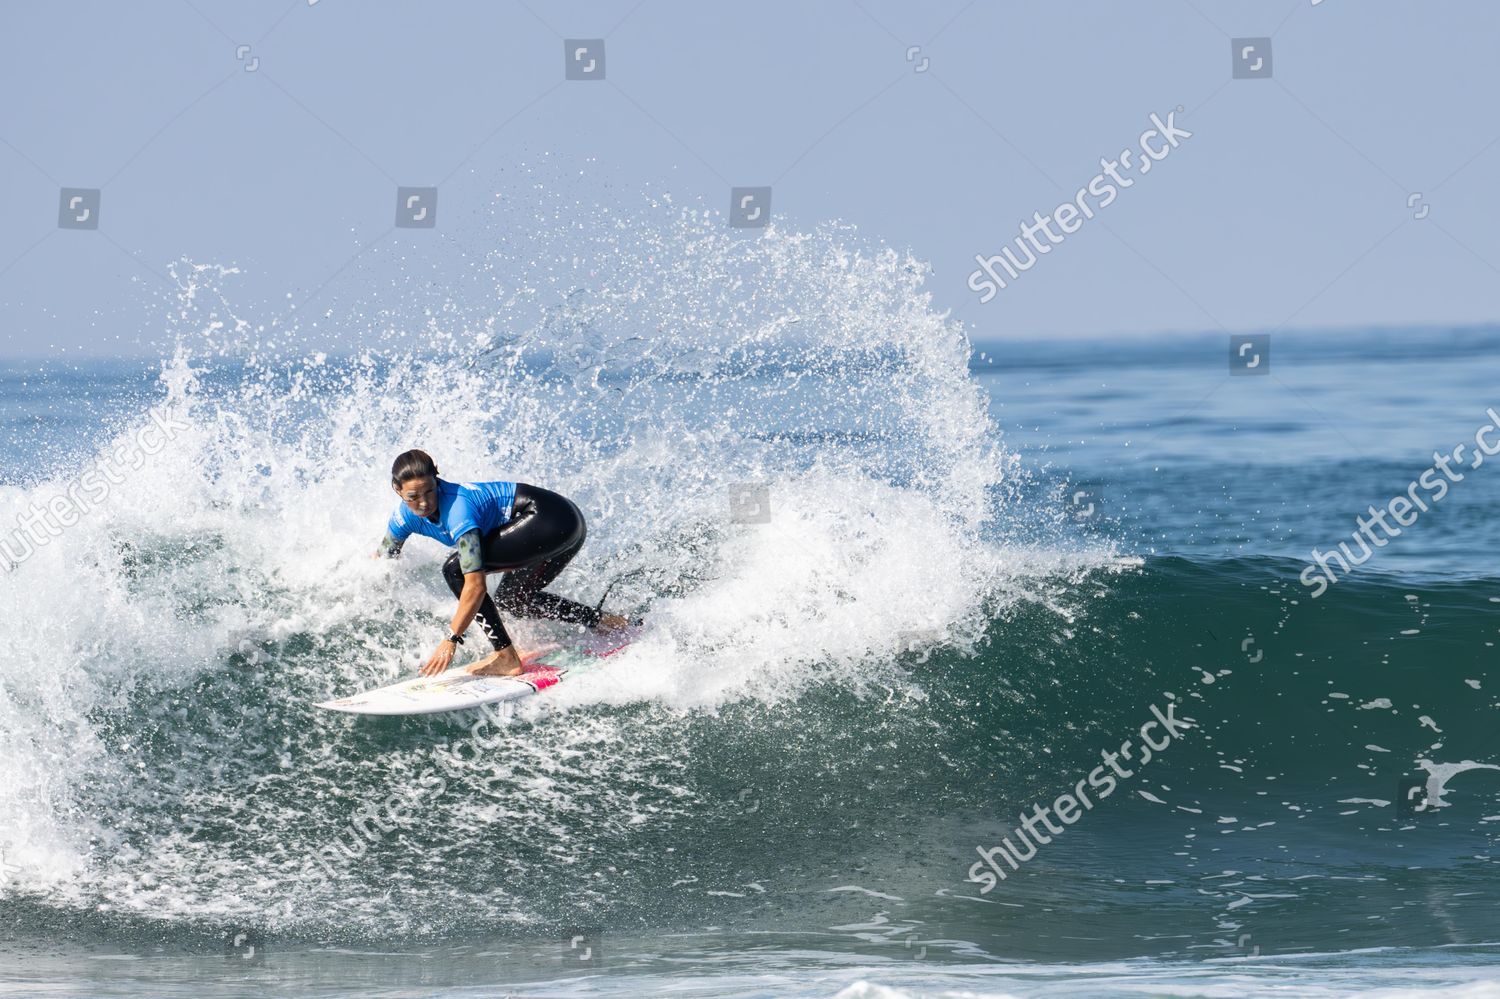 AV Surfs 